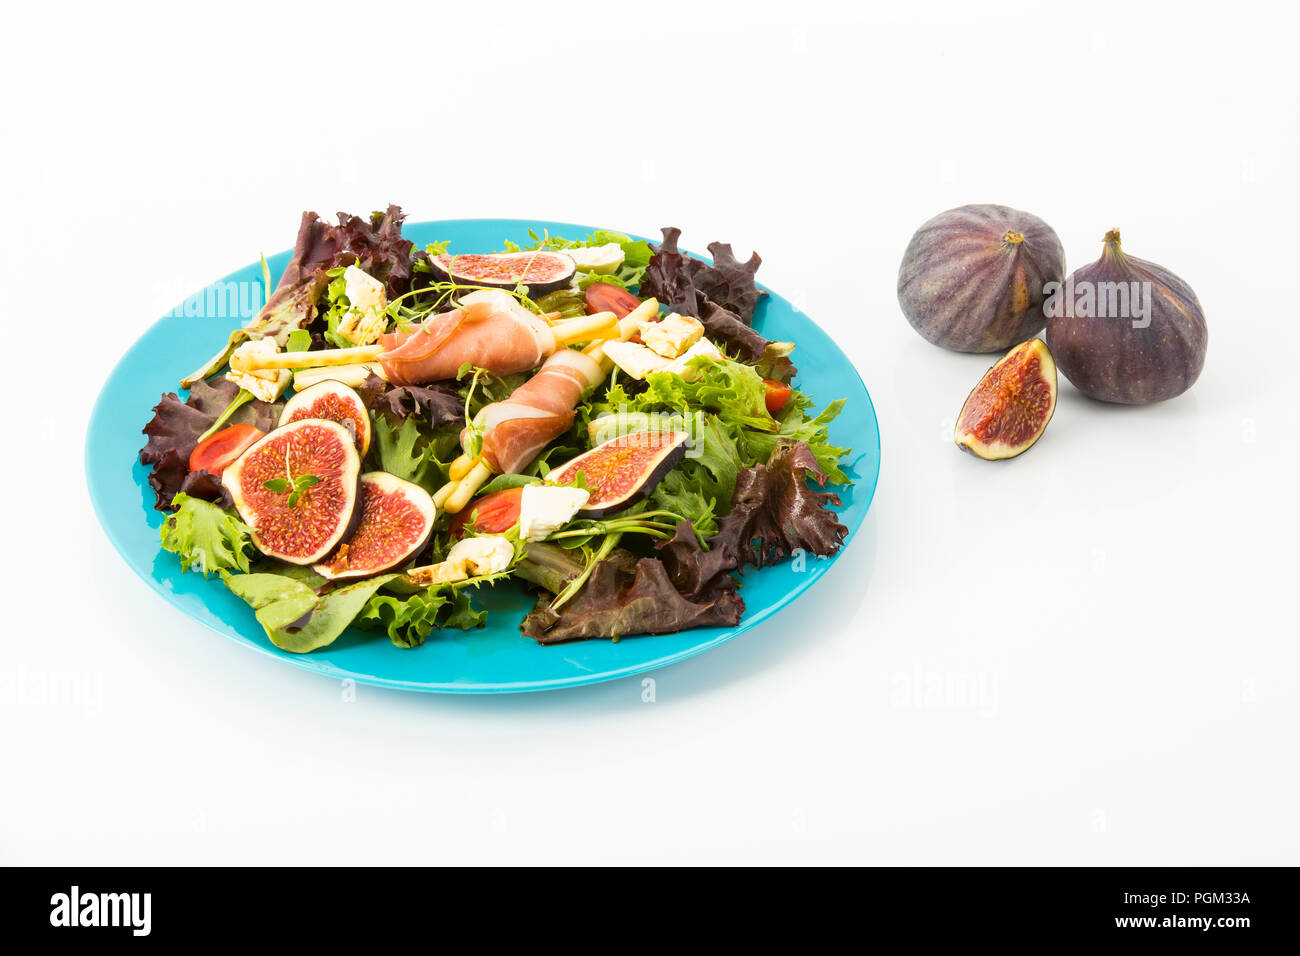 gemischter Blattsalat mit Feigen, Tomaten, Schafskaese und Crossinis mit Schinken, Freisteller Stock Photo